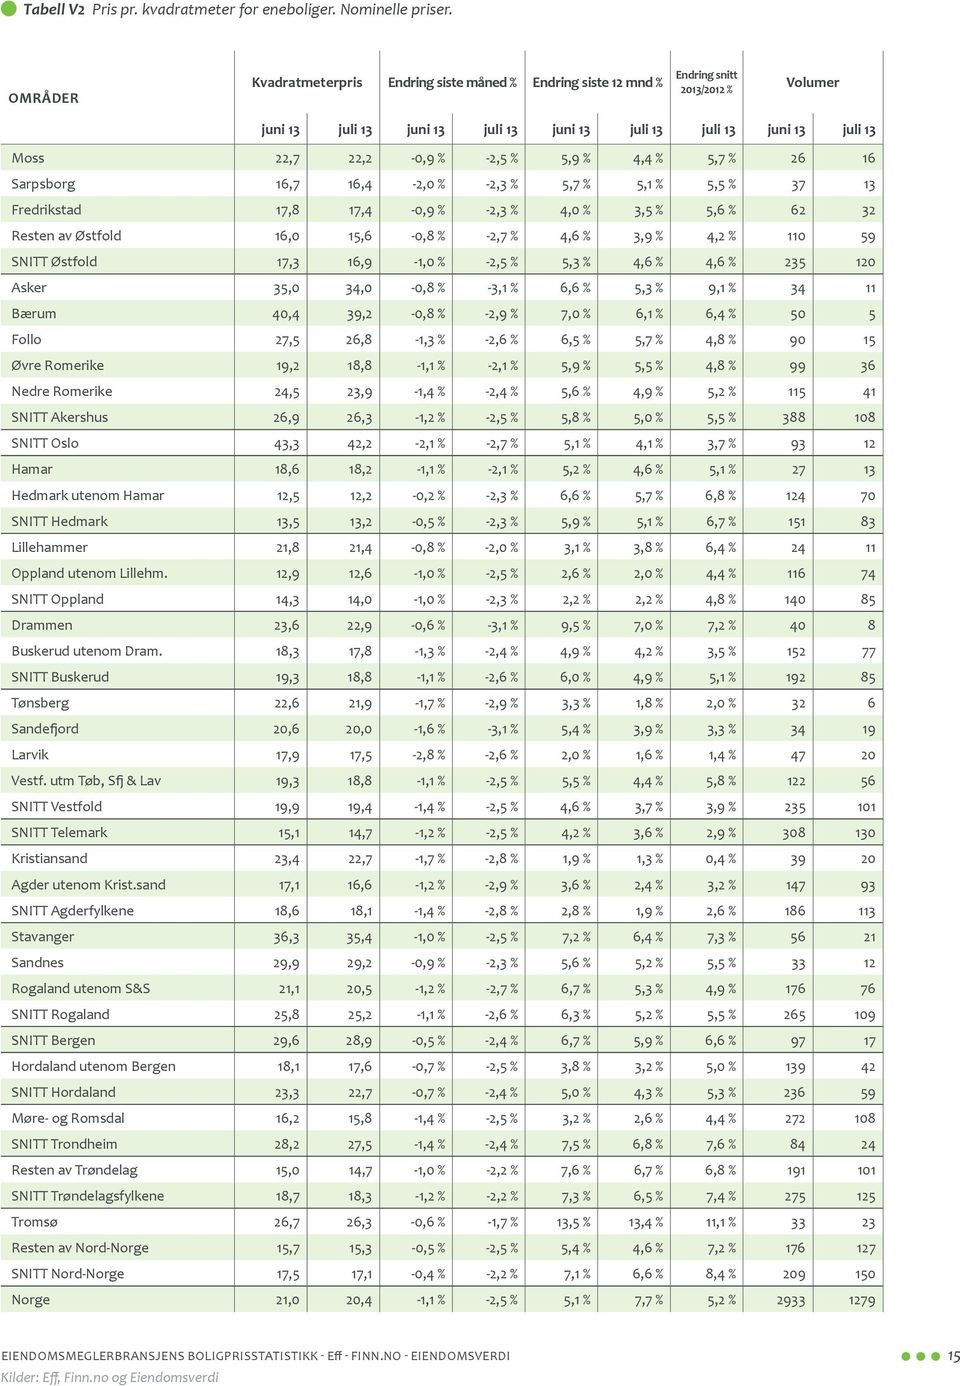 % 26 16 Sarpsborg 16,7 16,4-2,0 % -2,3 % 5,7 % 5,1 % 5,5 % 37 13 Fredrikstad 17,8 17,4-0,9 % -2,3 % 4,0 % 3,5 % 5,6 % 62 32 Resten av Østfold 16,0 15,6-0,8 % -2,7 % 4,6 % 3,9 % 4,2 % 110 59 SNITT